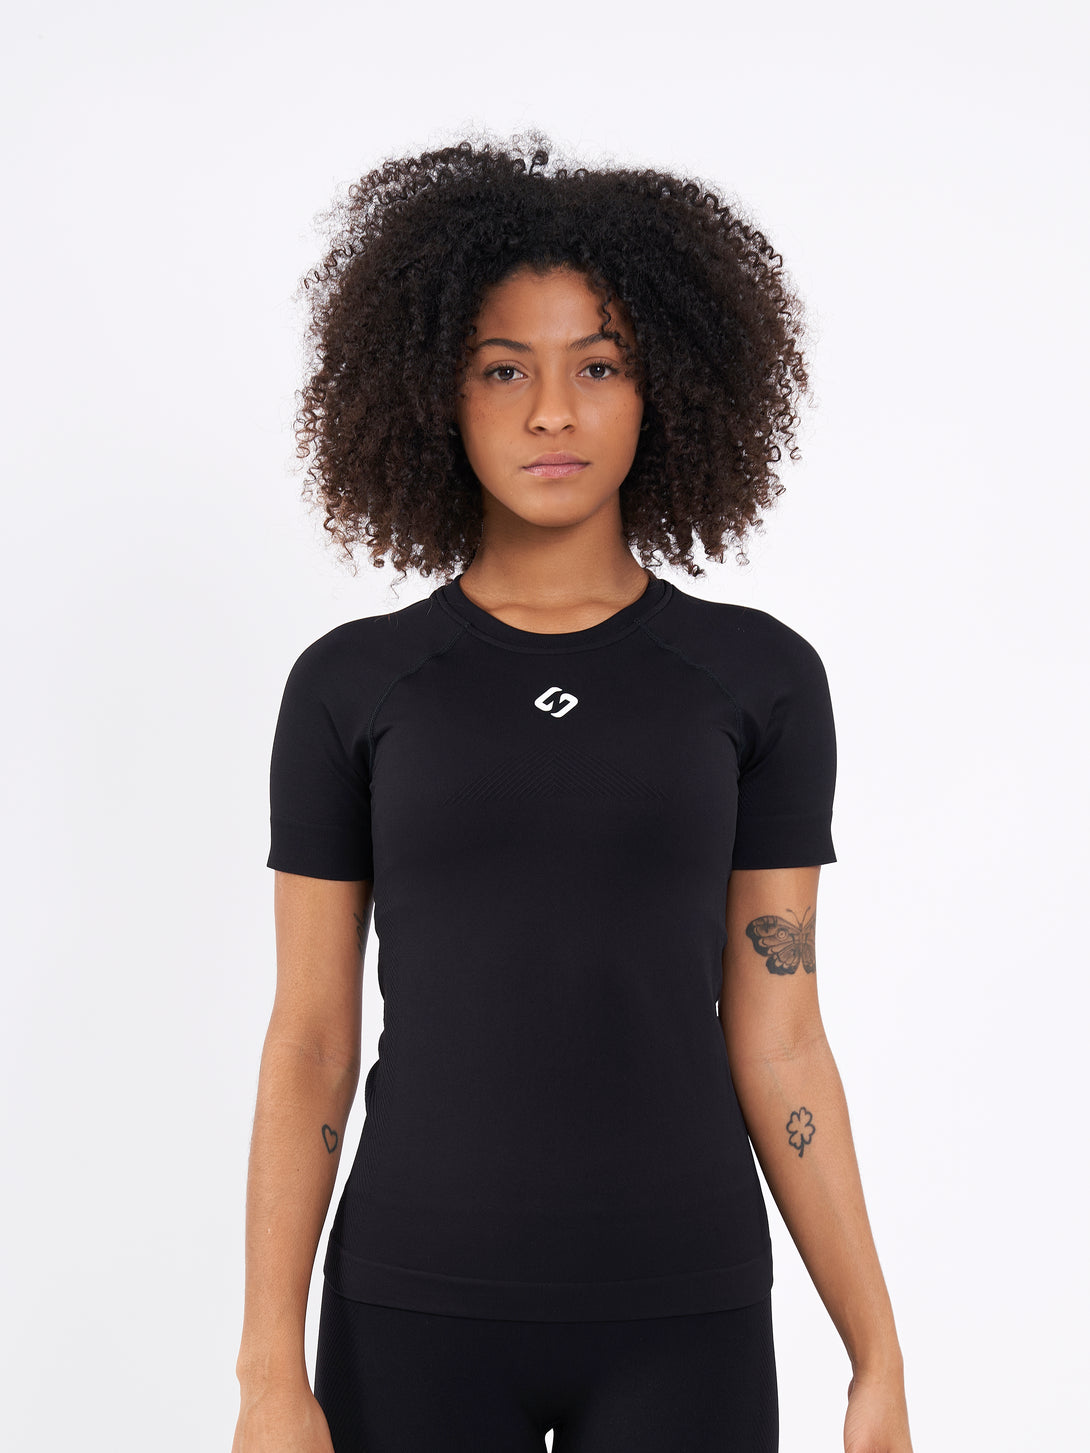 A Women Wearing Deep Black Color Zen Perfect Seamless T-Shirt. Extra-Soft